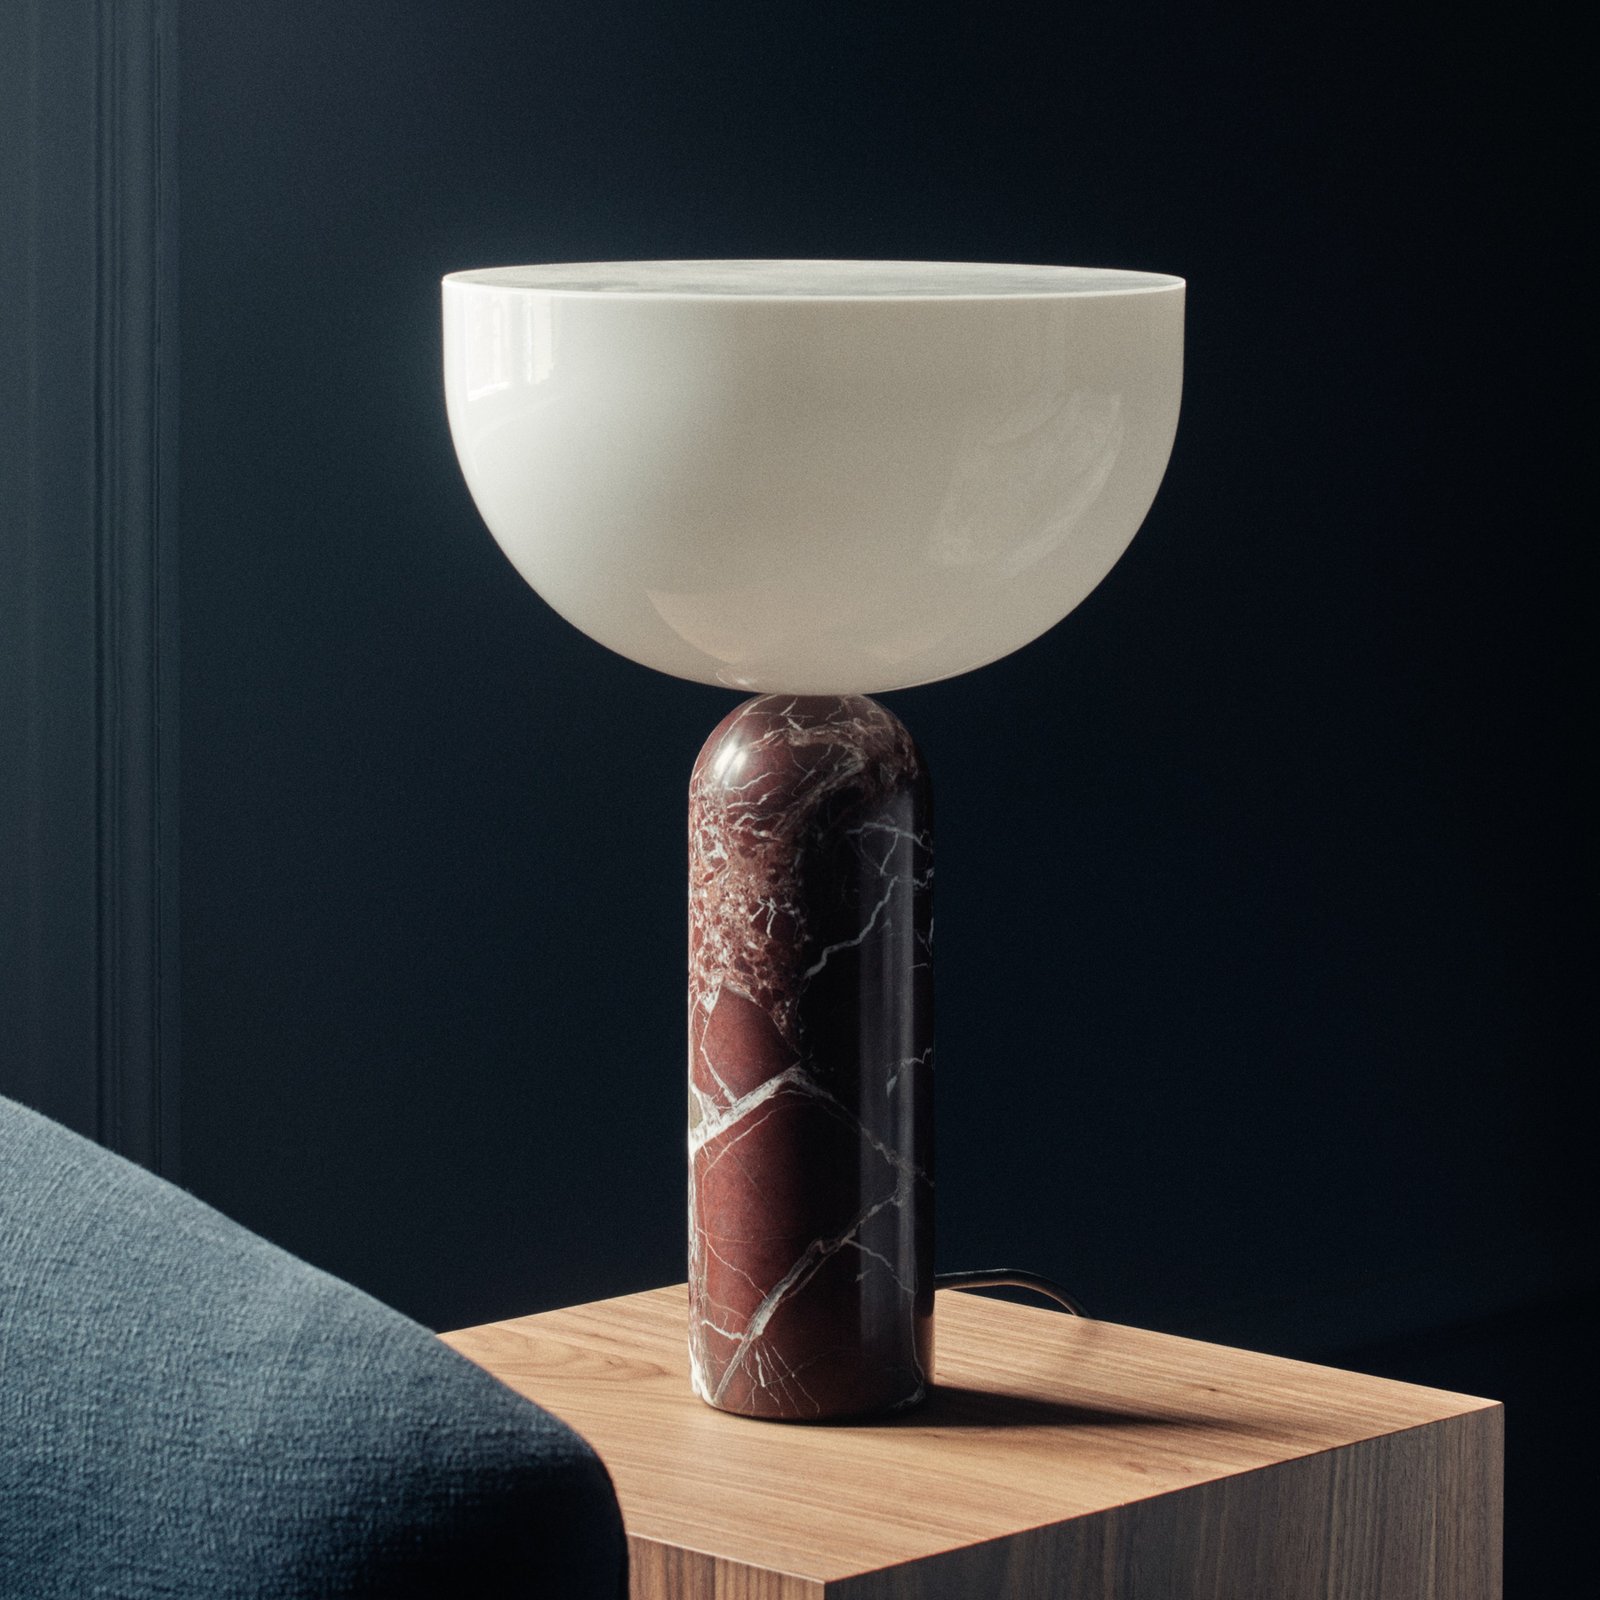 New Works Kizu Large lámpara de mesa Rosso Levanto